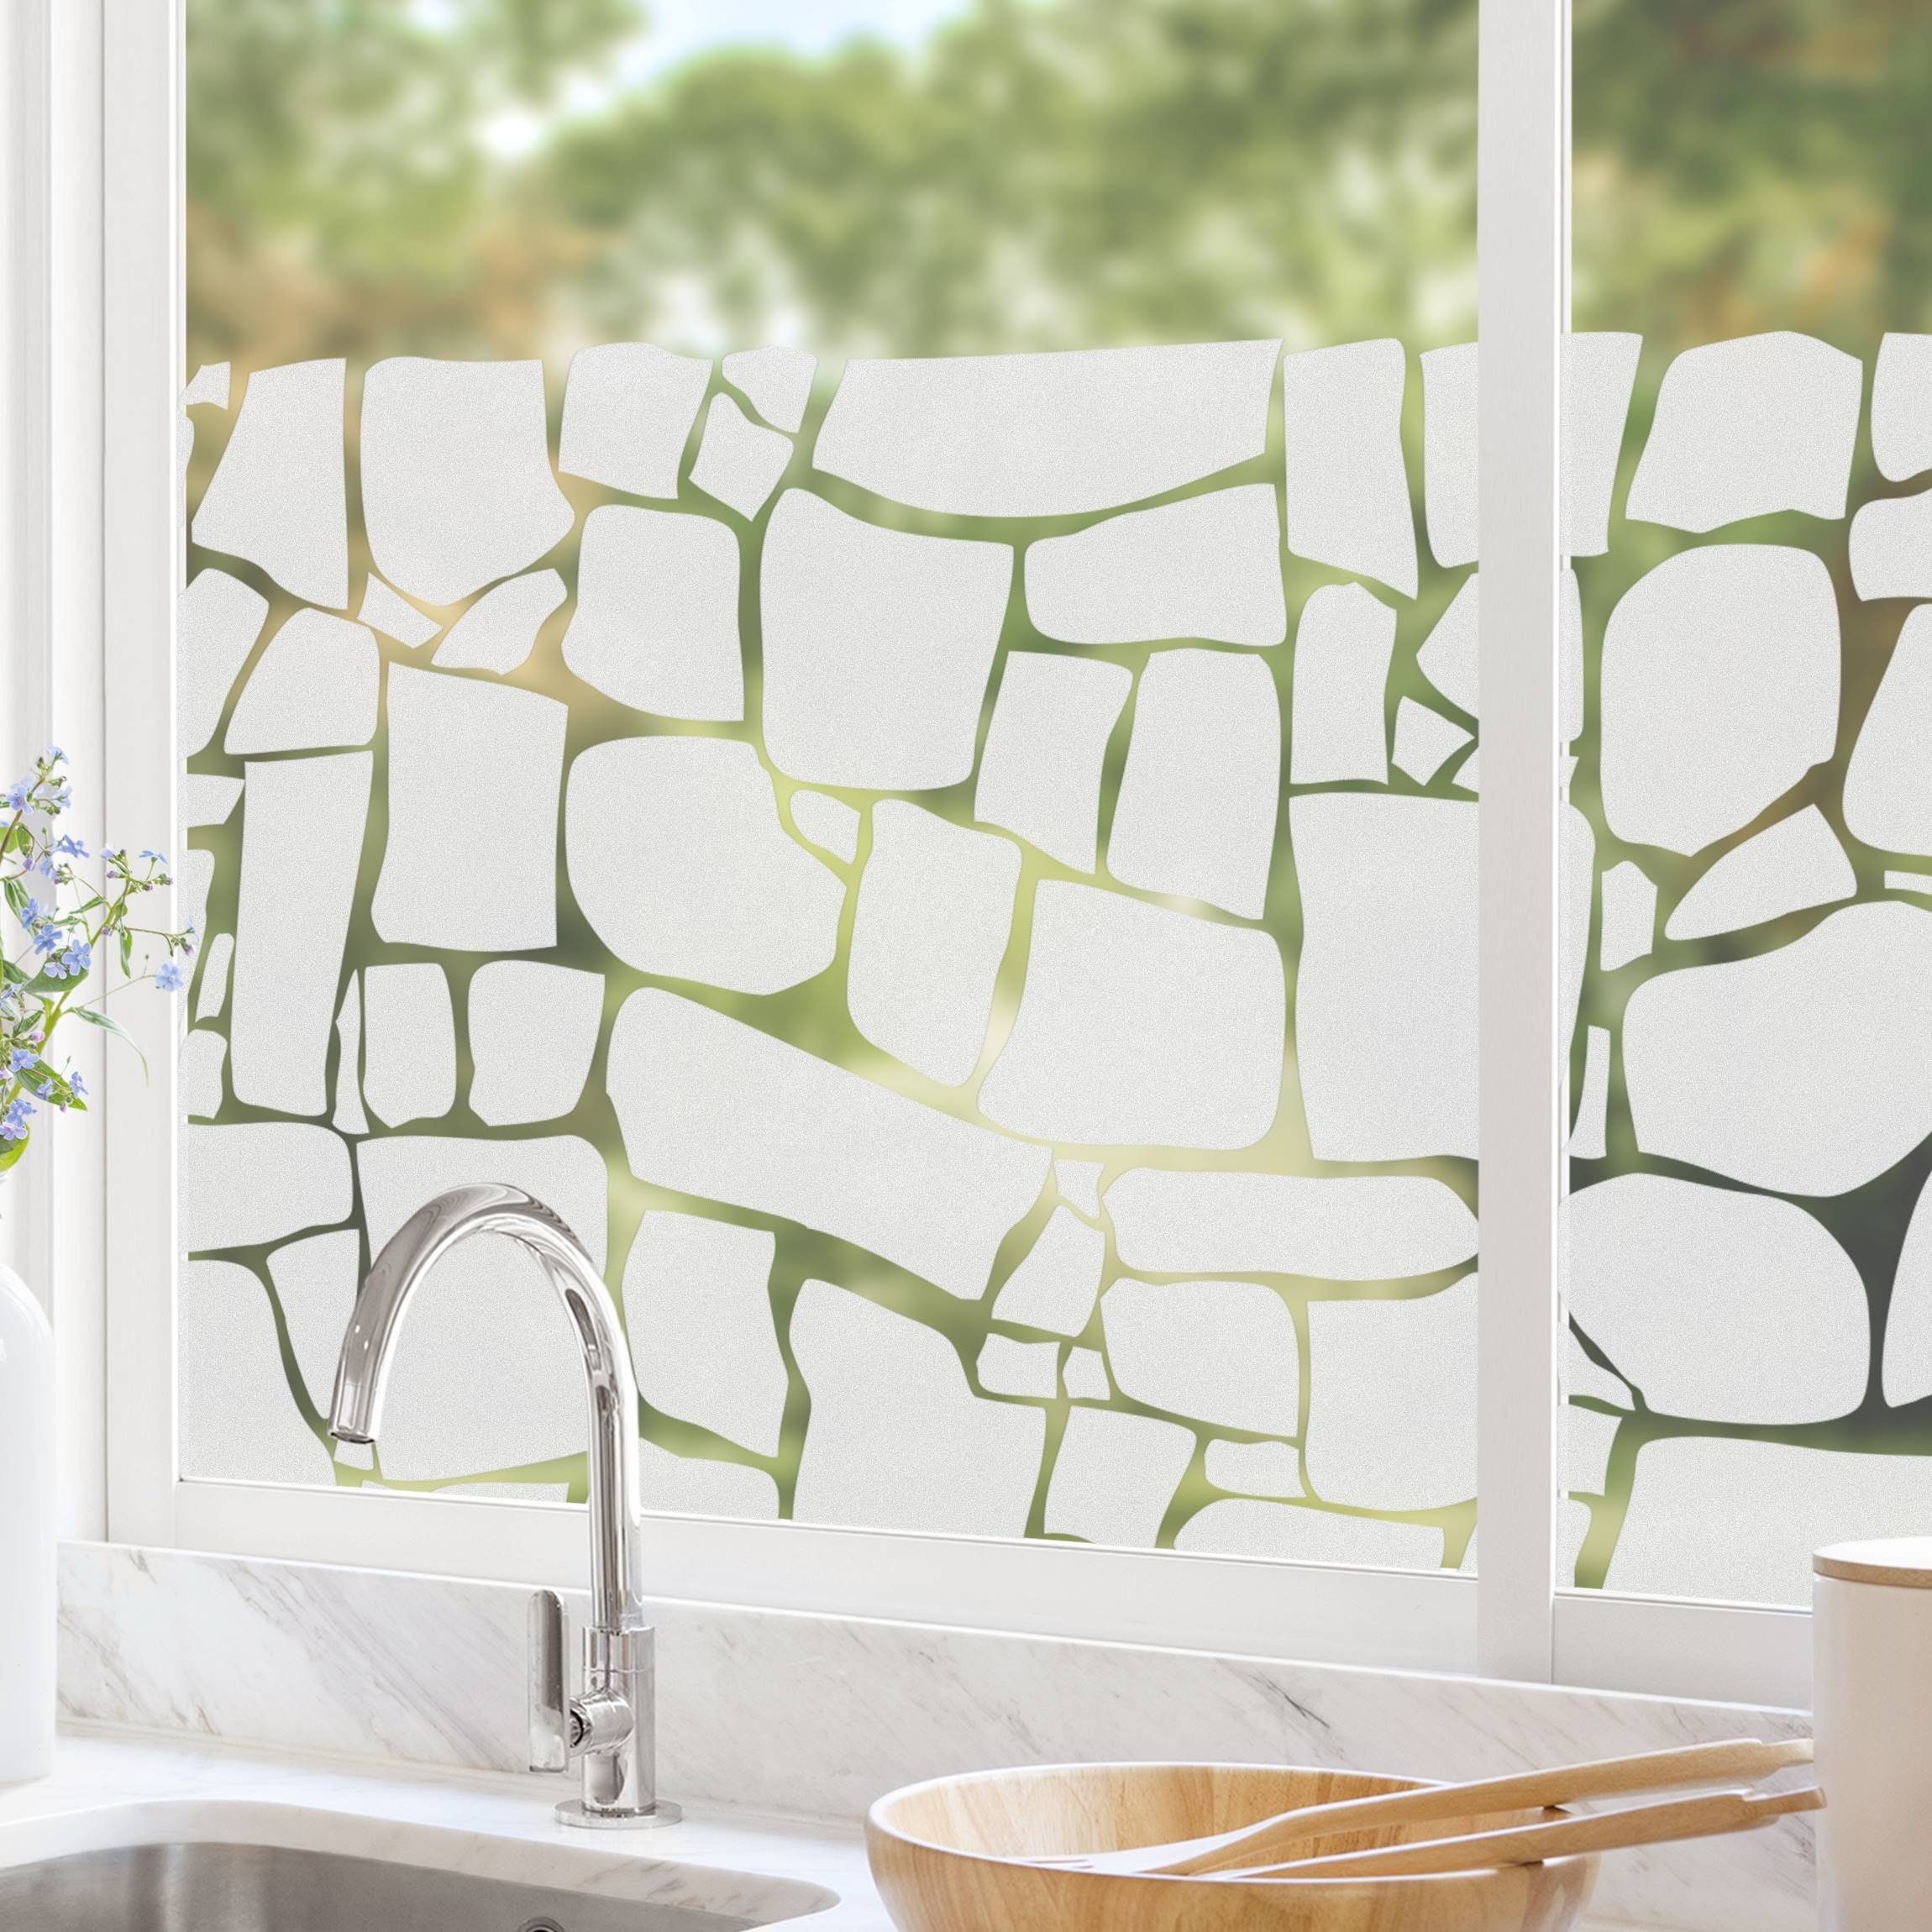 Fensterfolie statisch haftend Motiv Fensterdeko Natursteine Muster